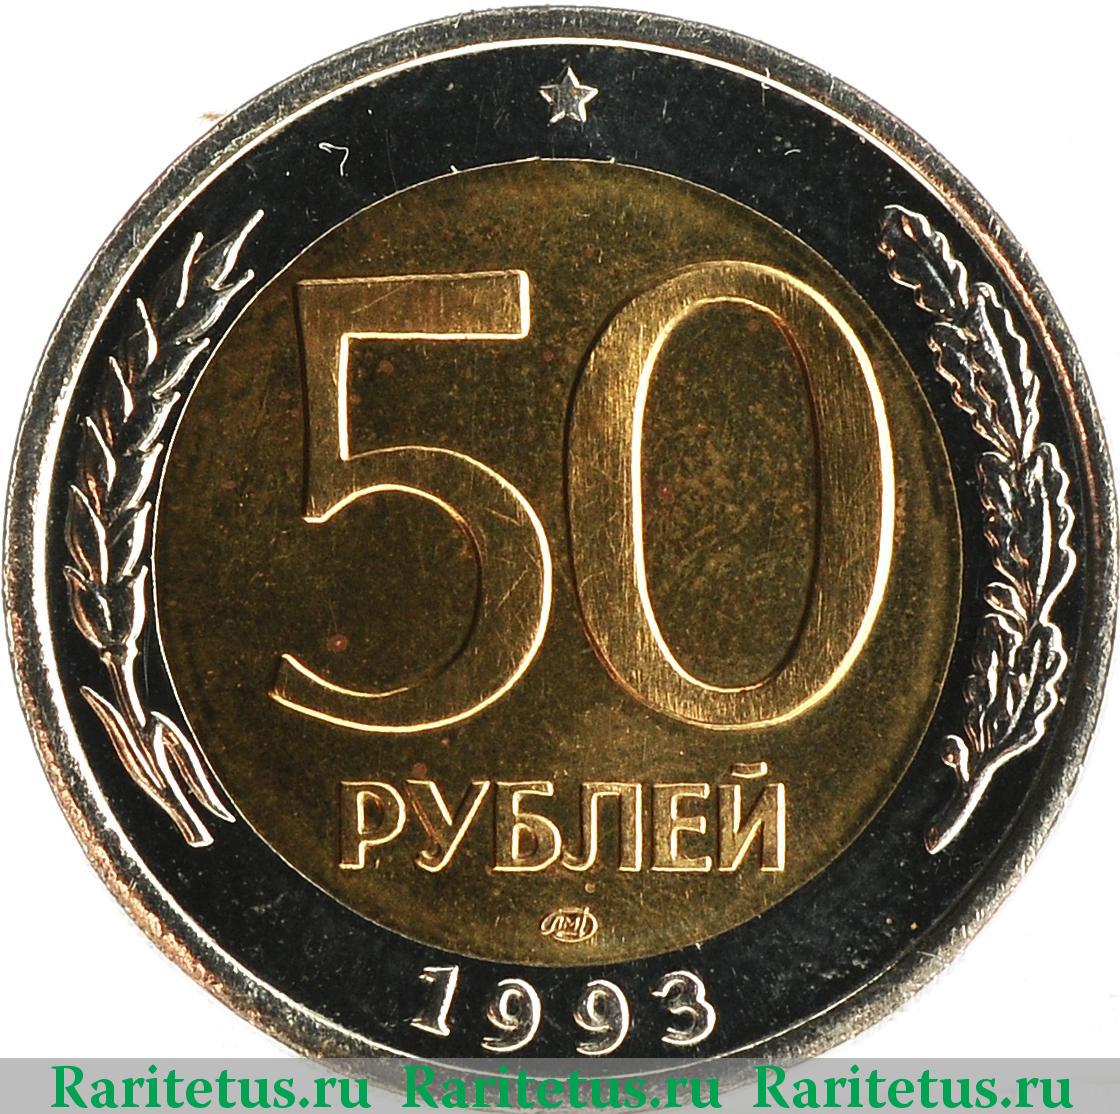 50 рублей. Биметалл. 1993 г. Реверс